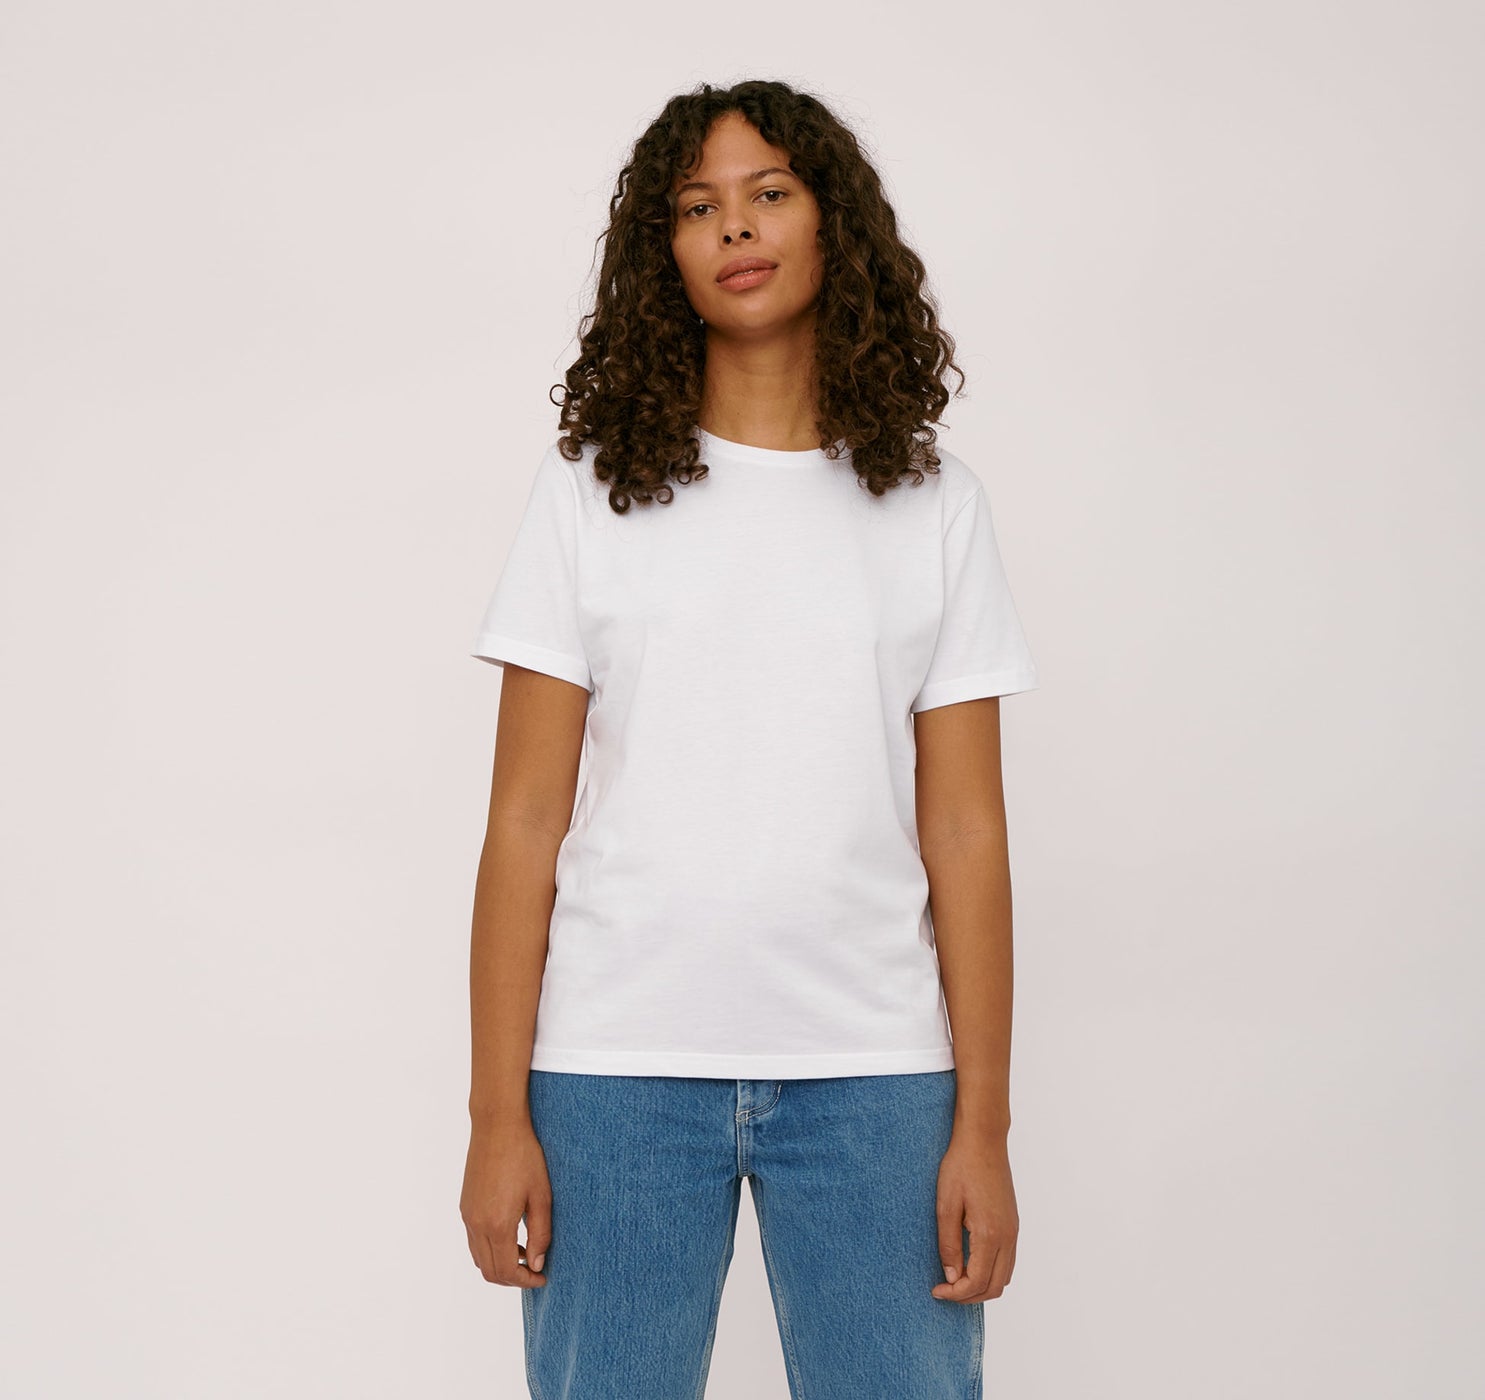 Organic cotton T-shirt women’s